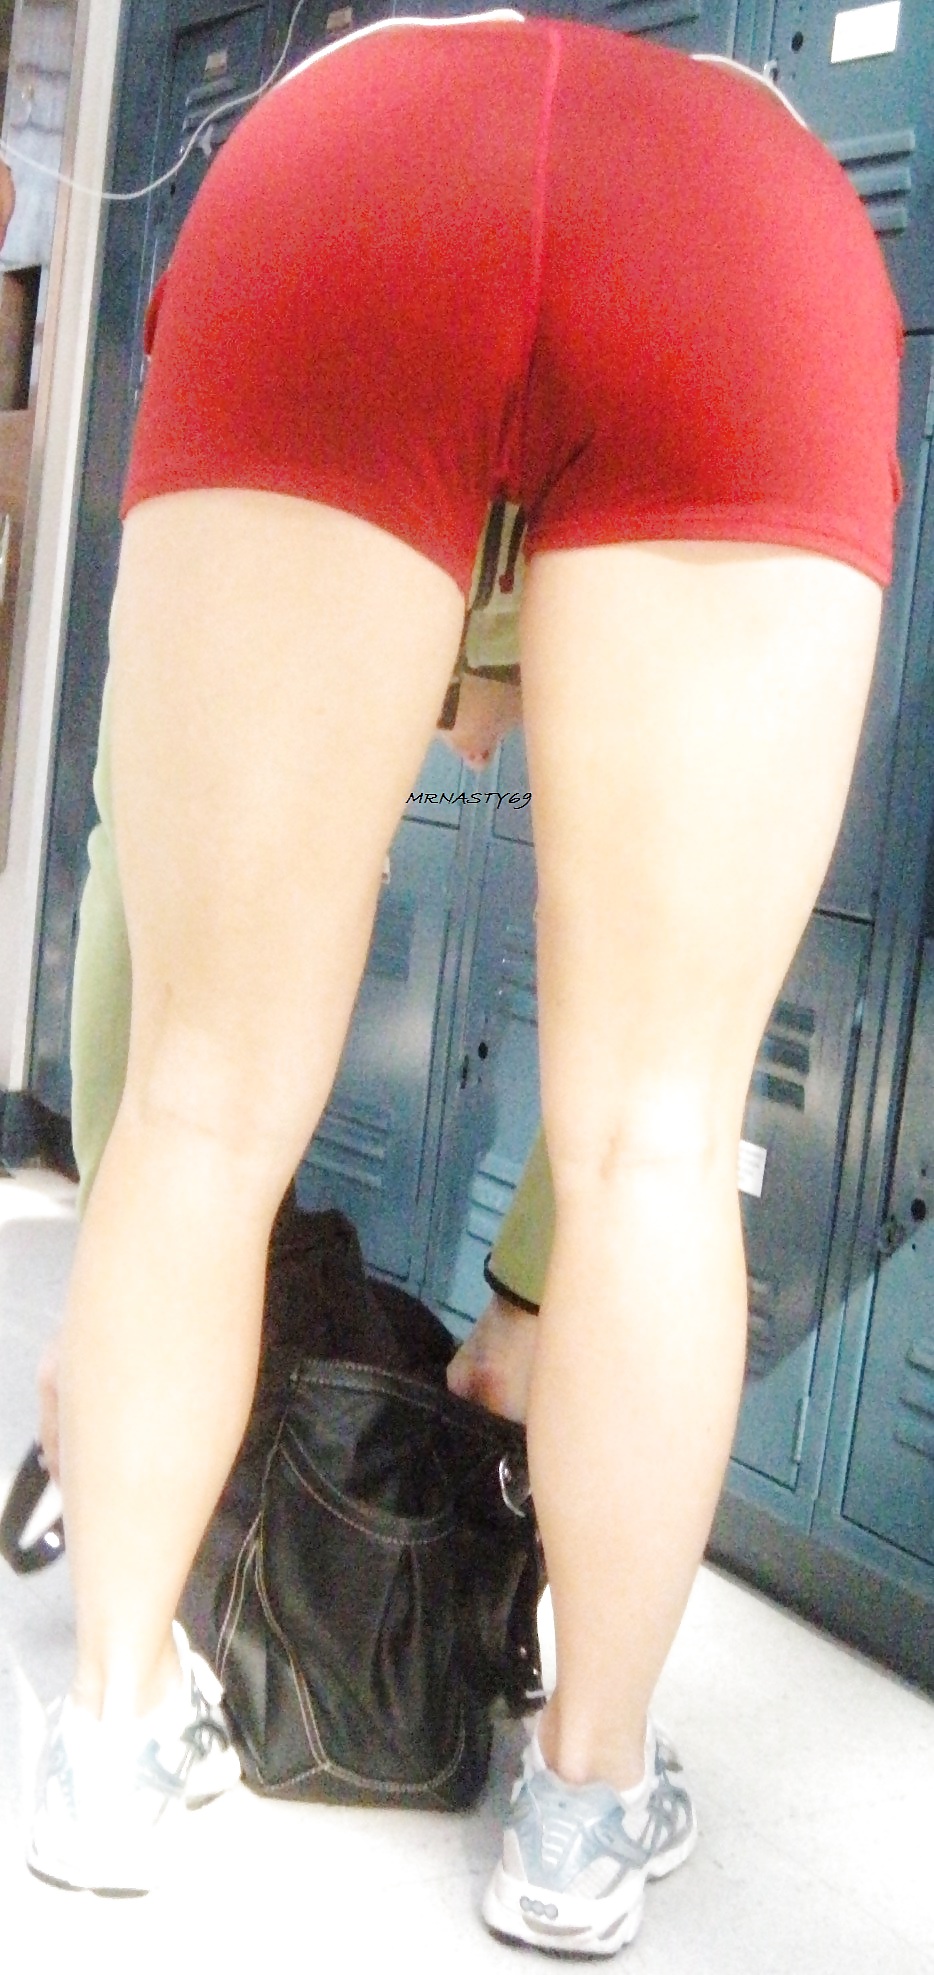 Chica blanca mini shorts rojos apretados mostrando el culo
 #19418440